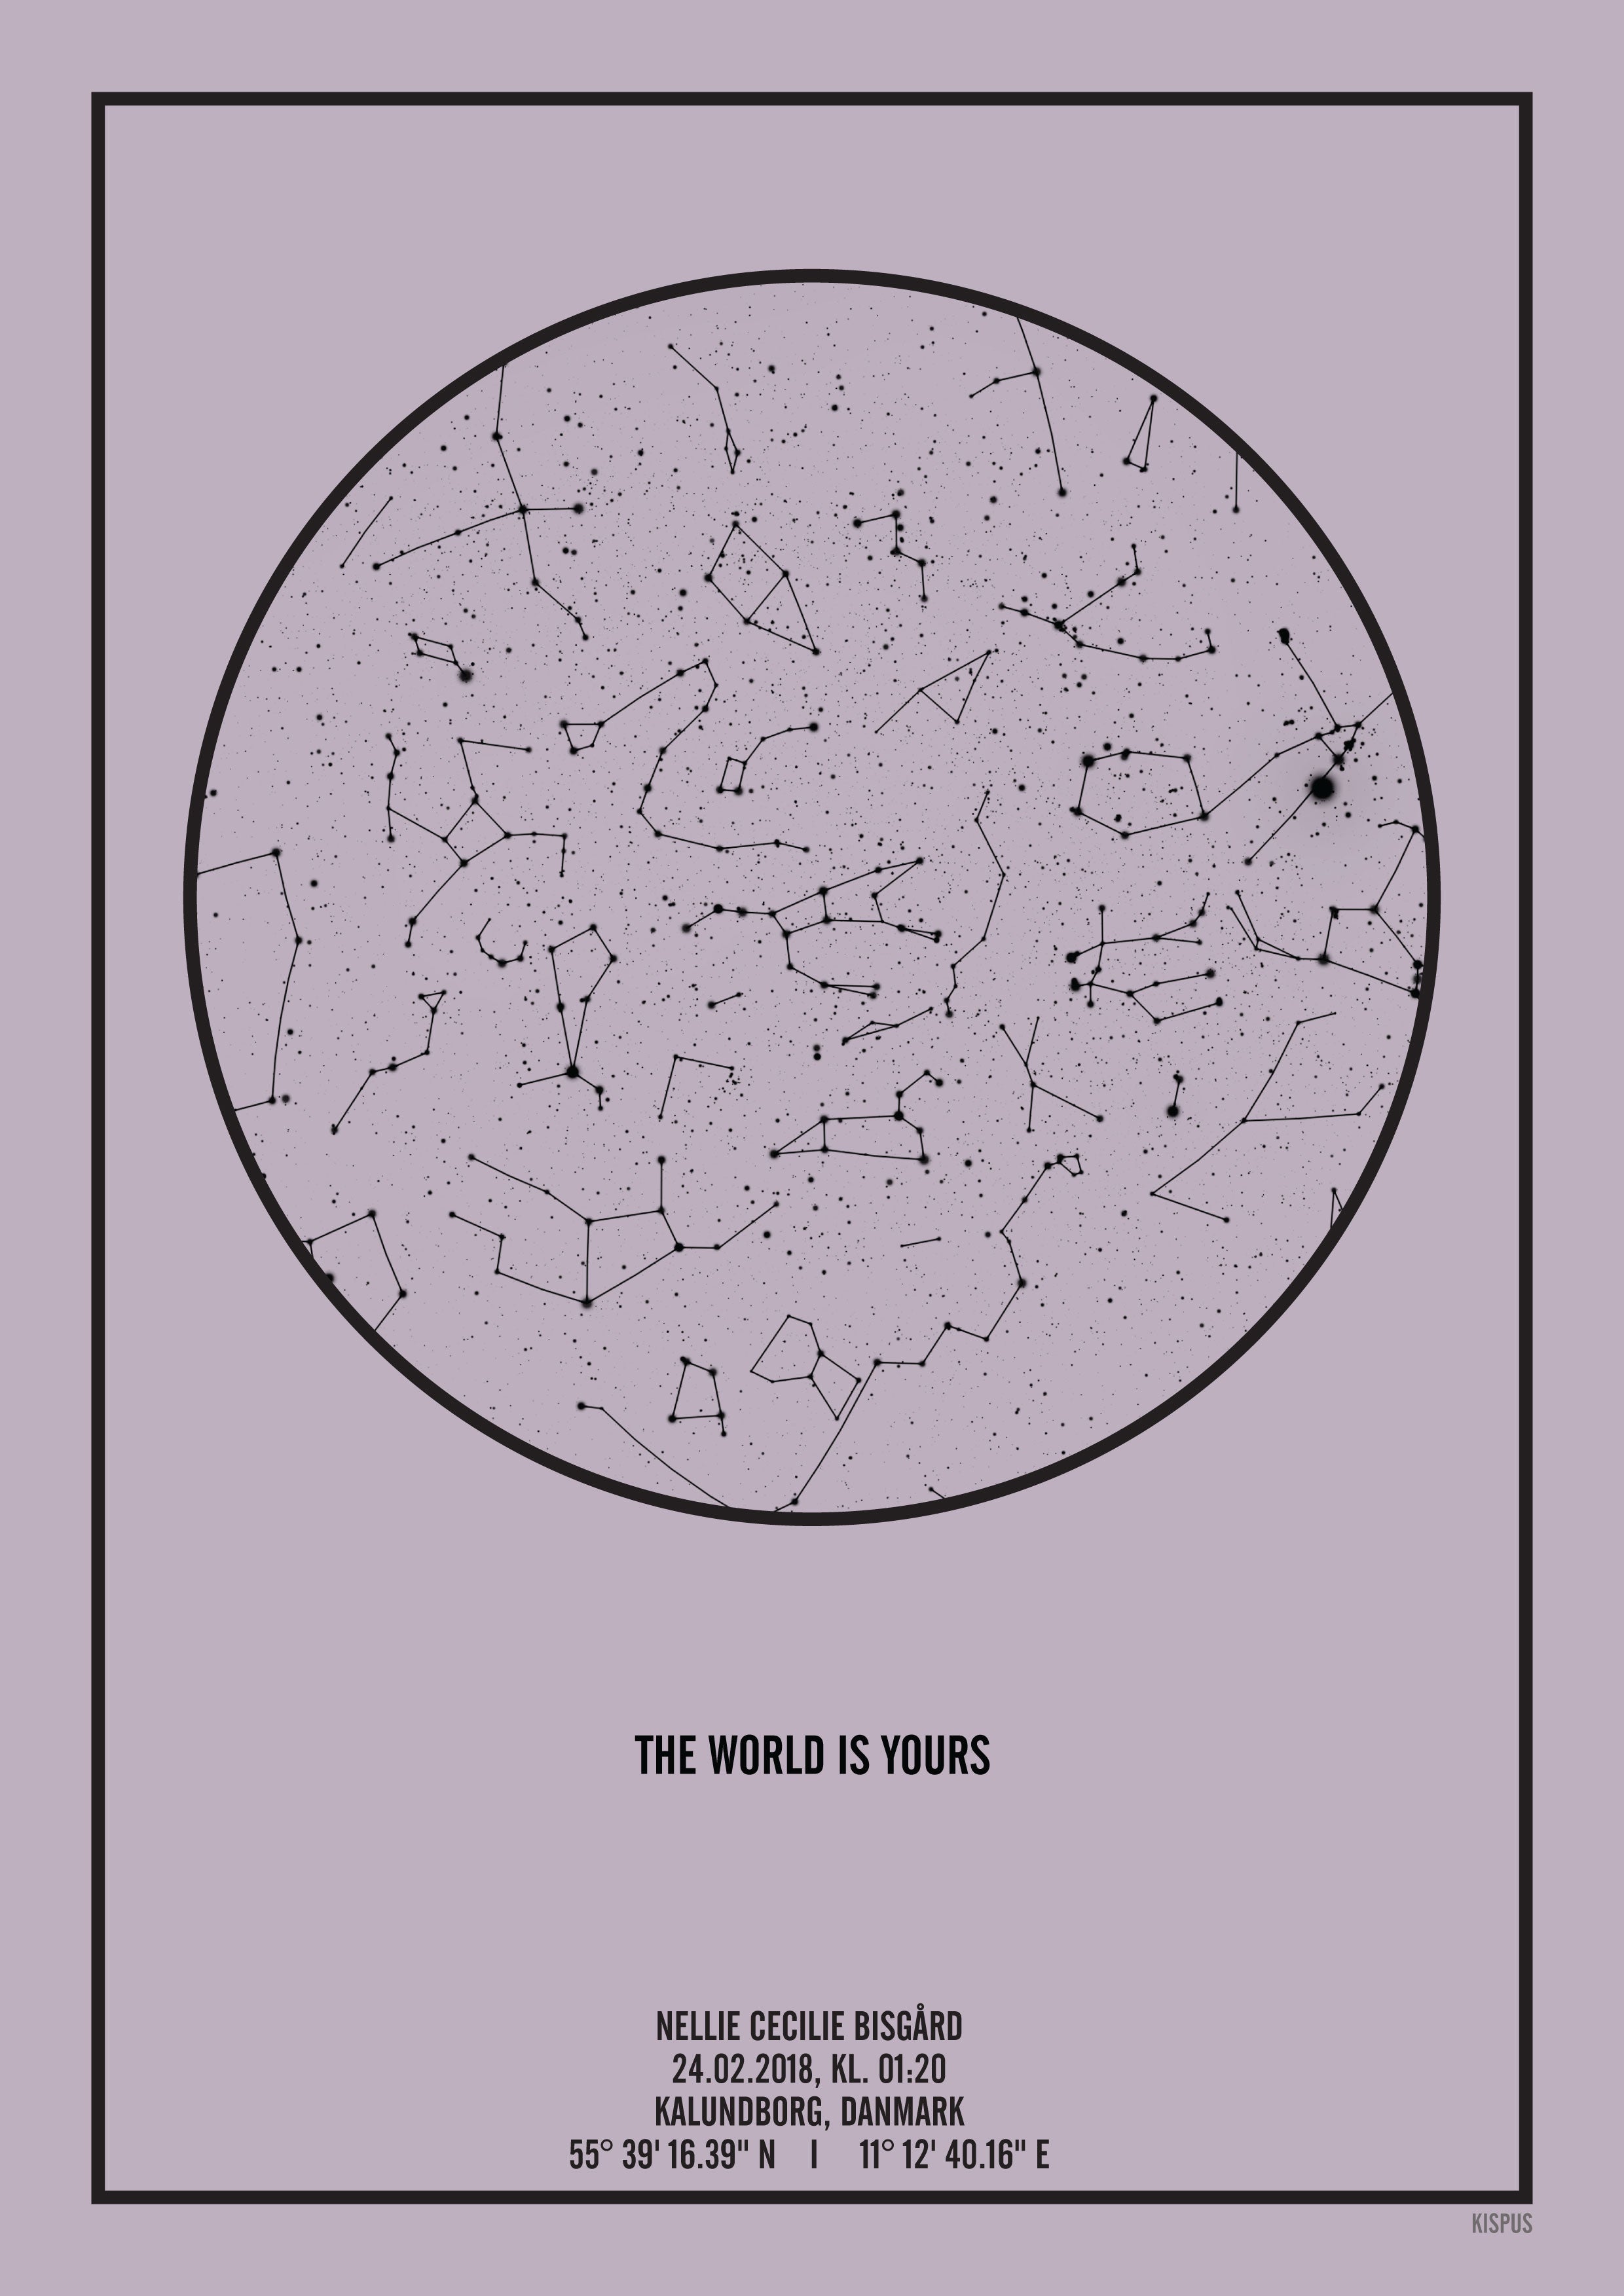 Se PERSONLIG STJERNEHIMMEL PLAKAT (LYSELILLA) - 50x70 / Sort tekst og lyselilla stjernehimmel / Stjernehimmel med stjernebilleder hos KISPUS